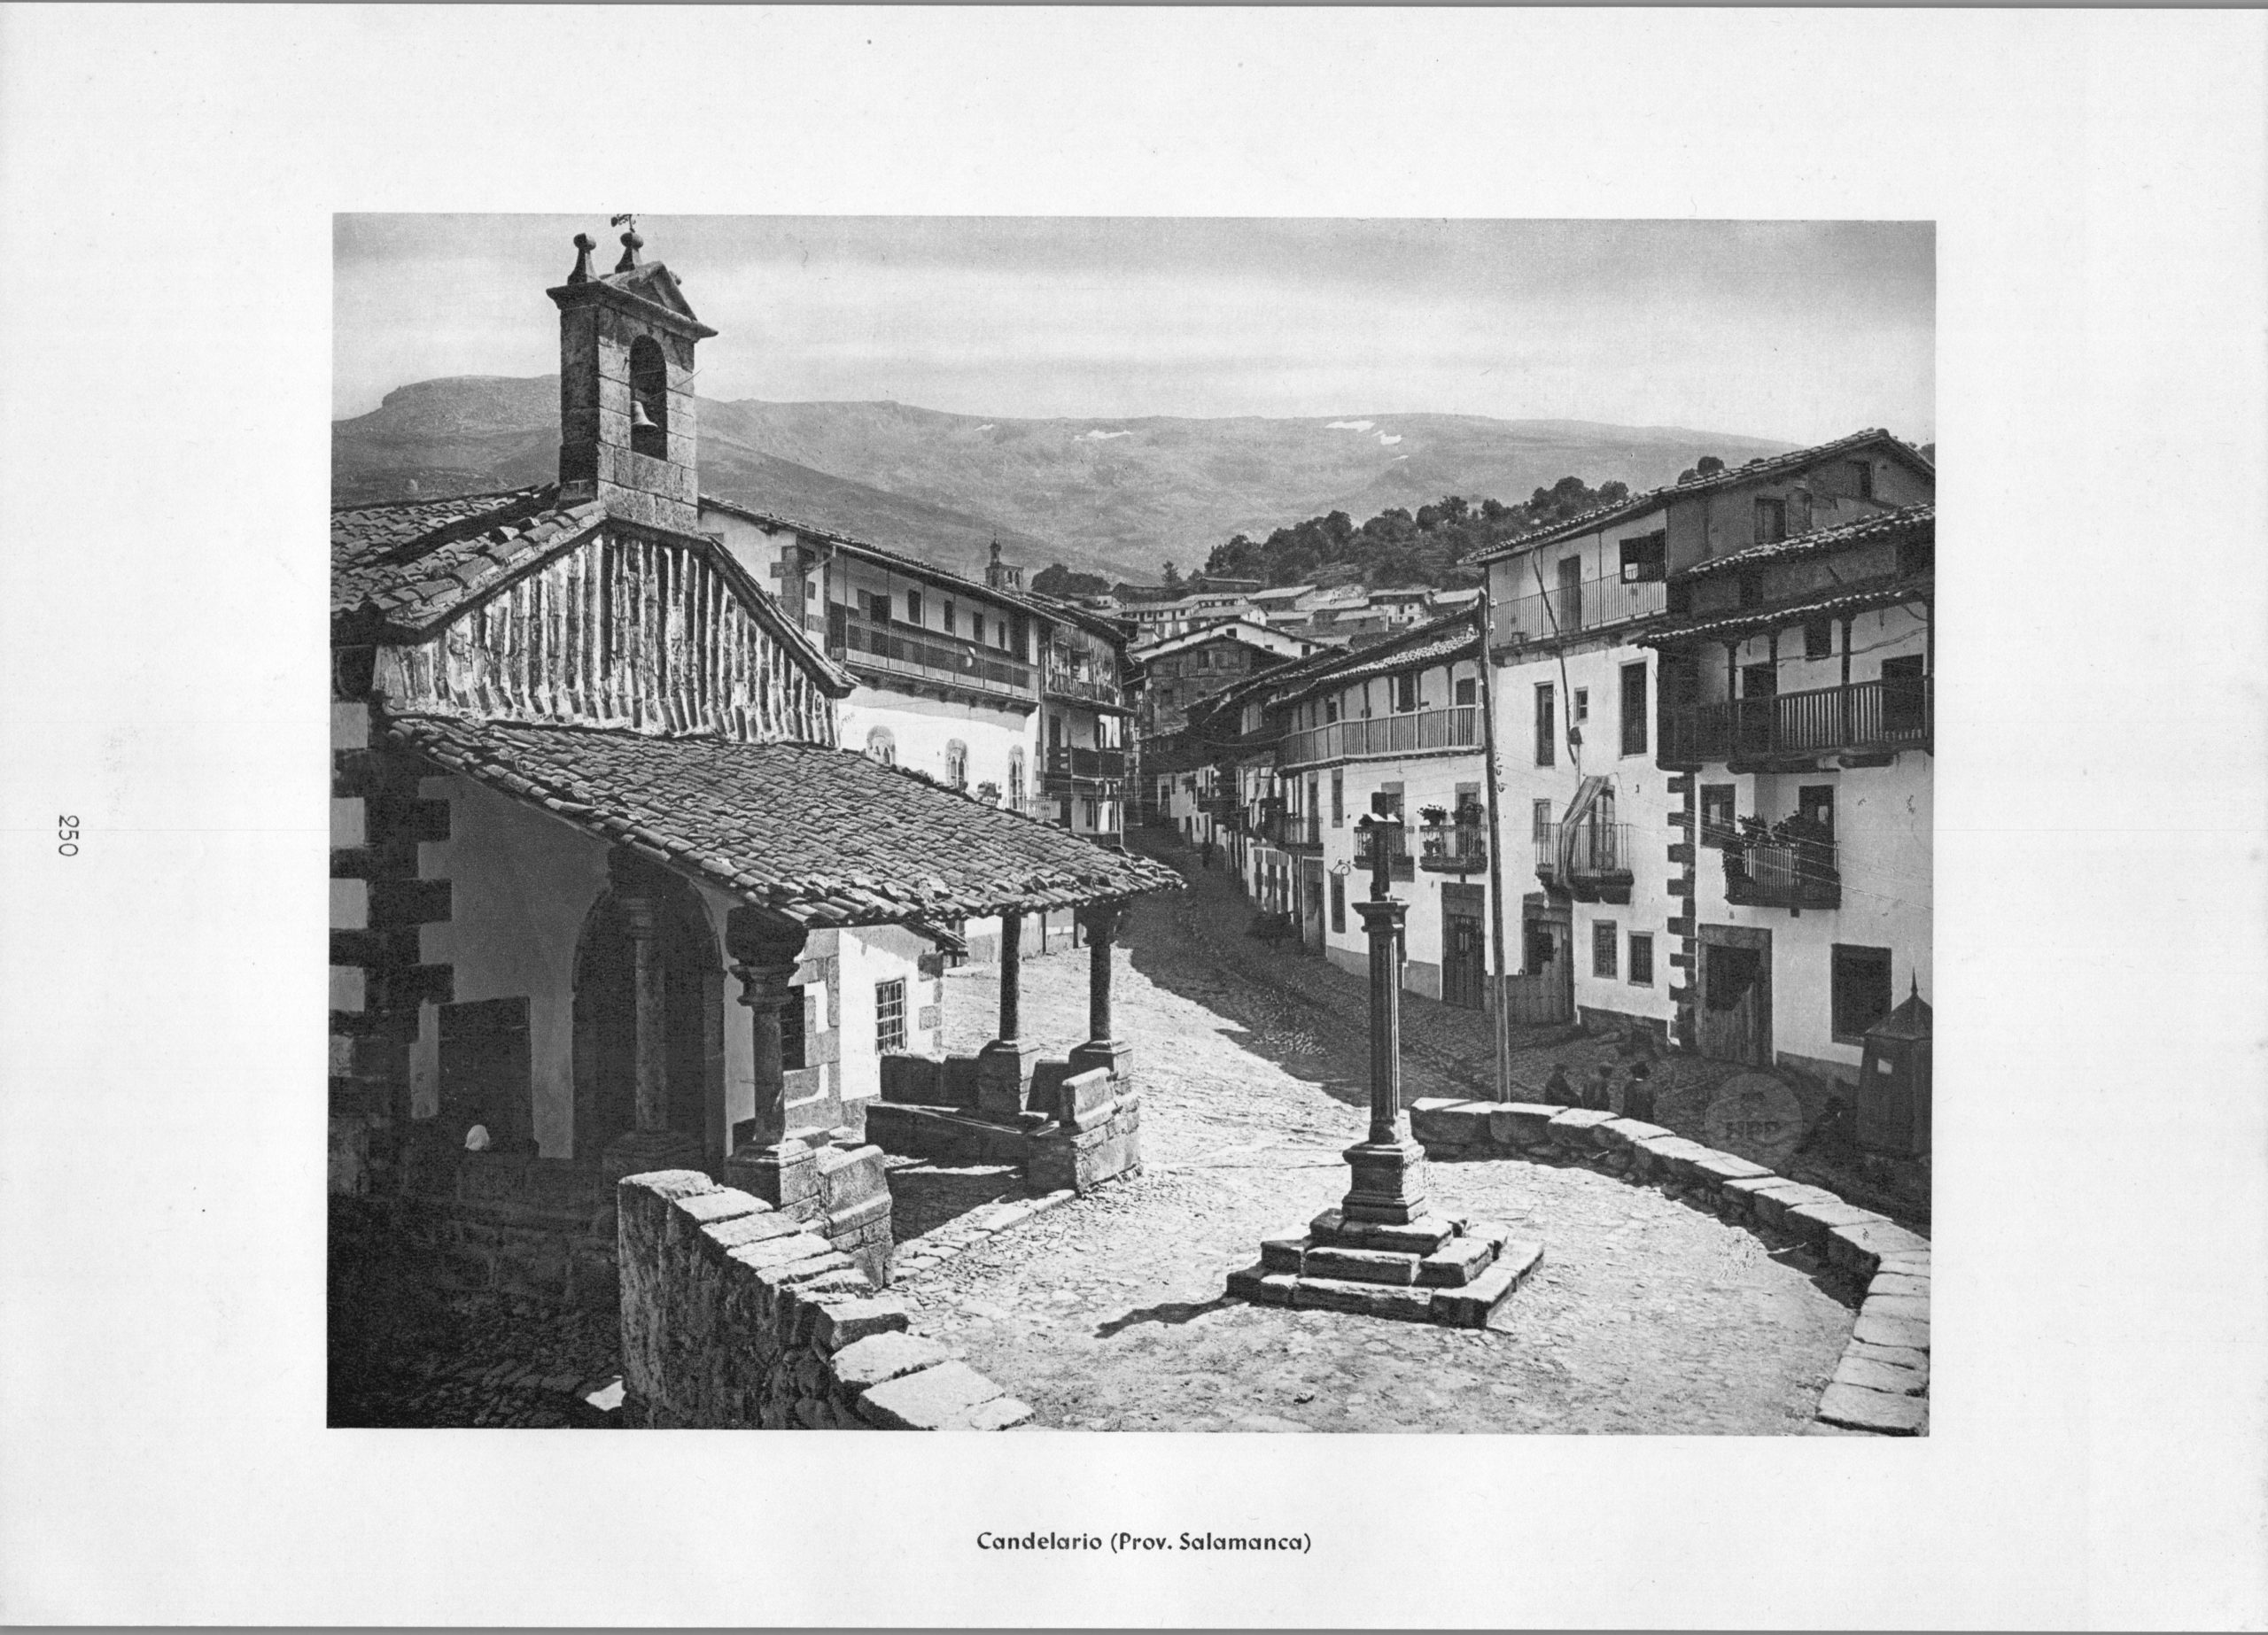 Salamanca Candelario - Village